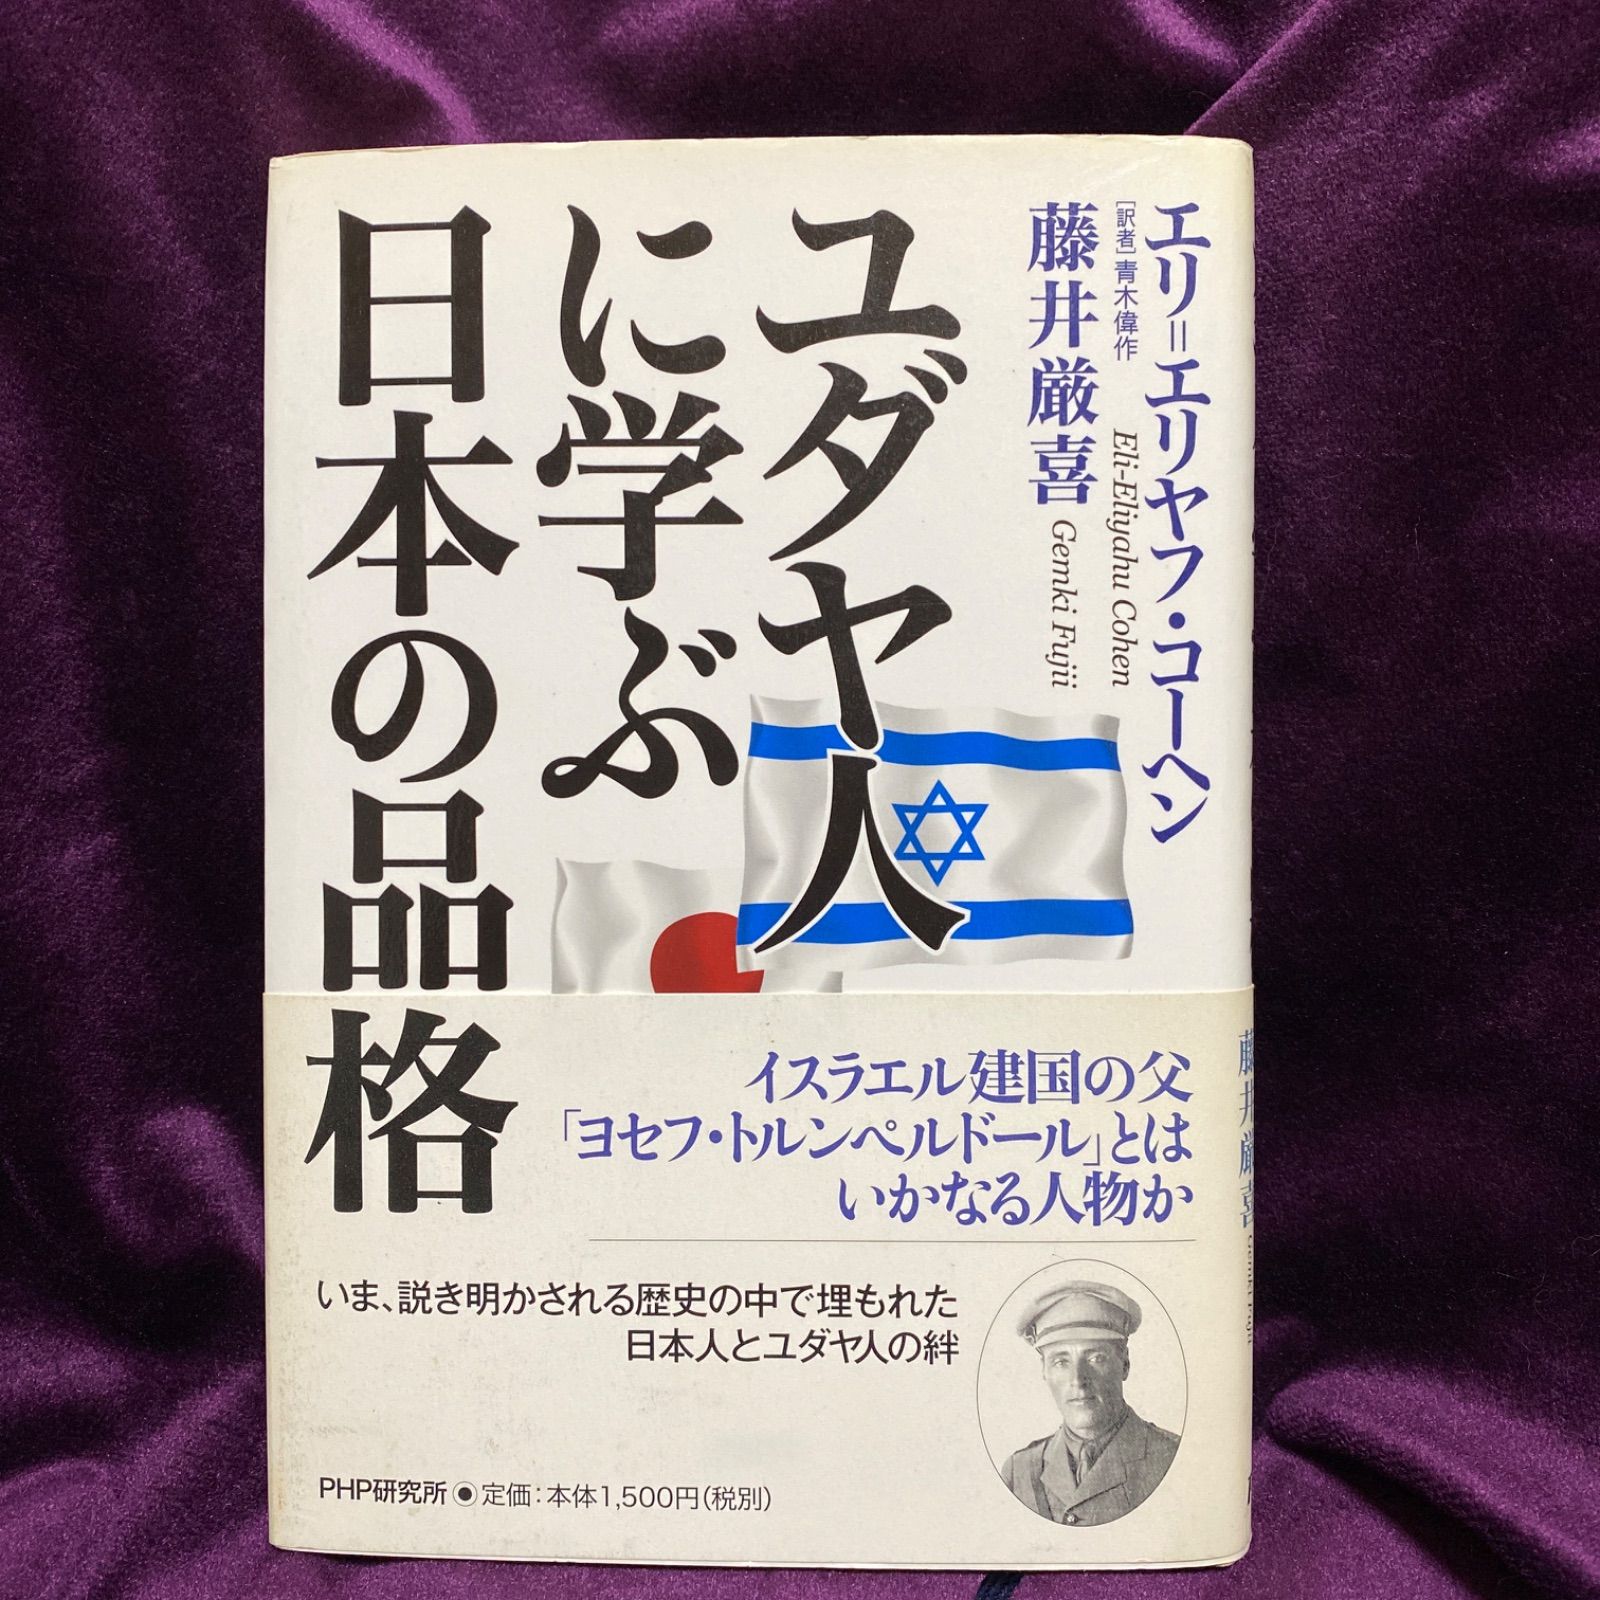 ☆激レア☆「ユダヤ人に学ぶ日本の品格」 藤井 厳喜 / Cohen Eli B